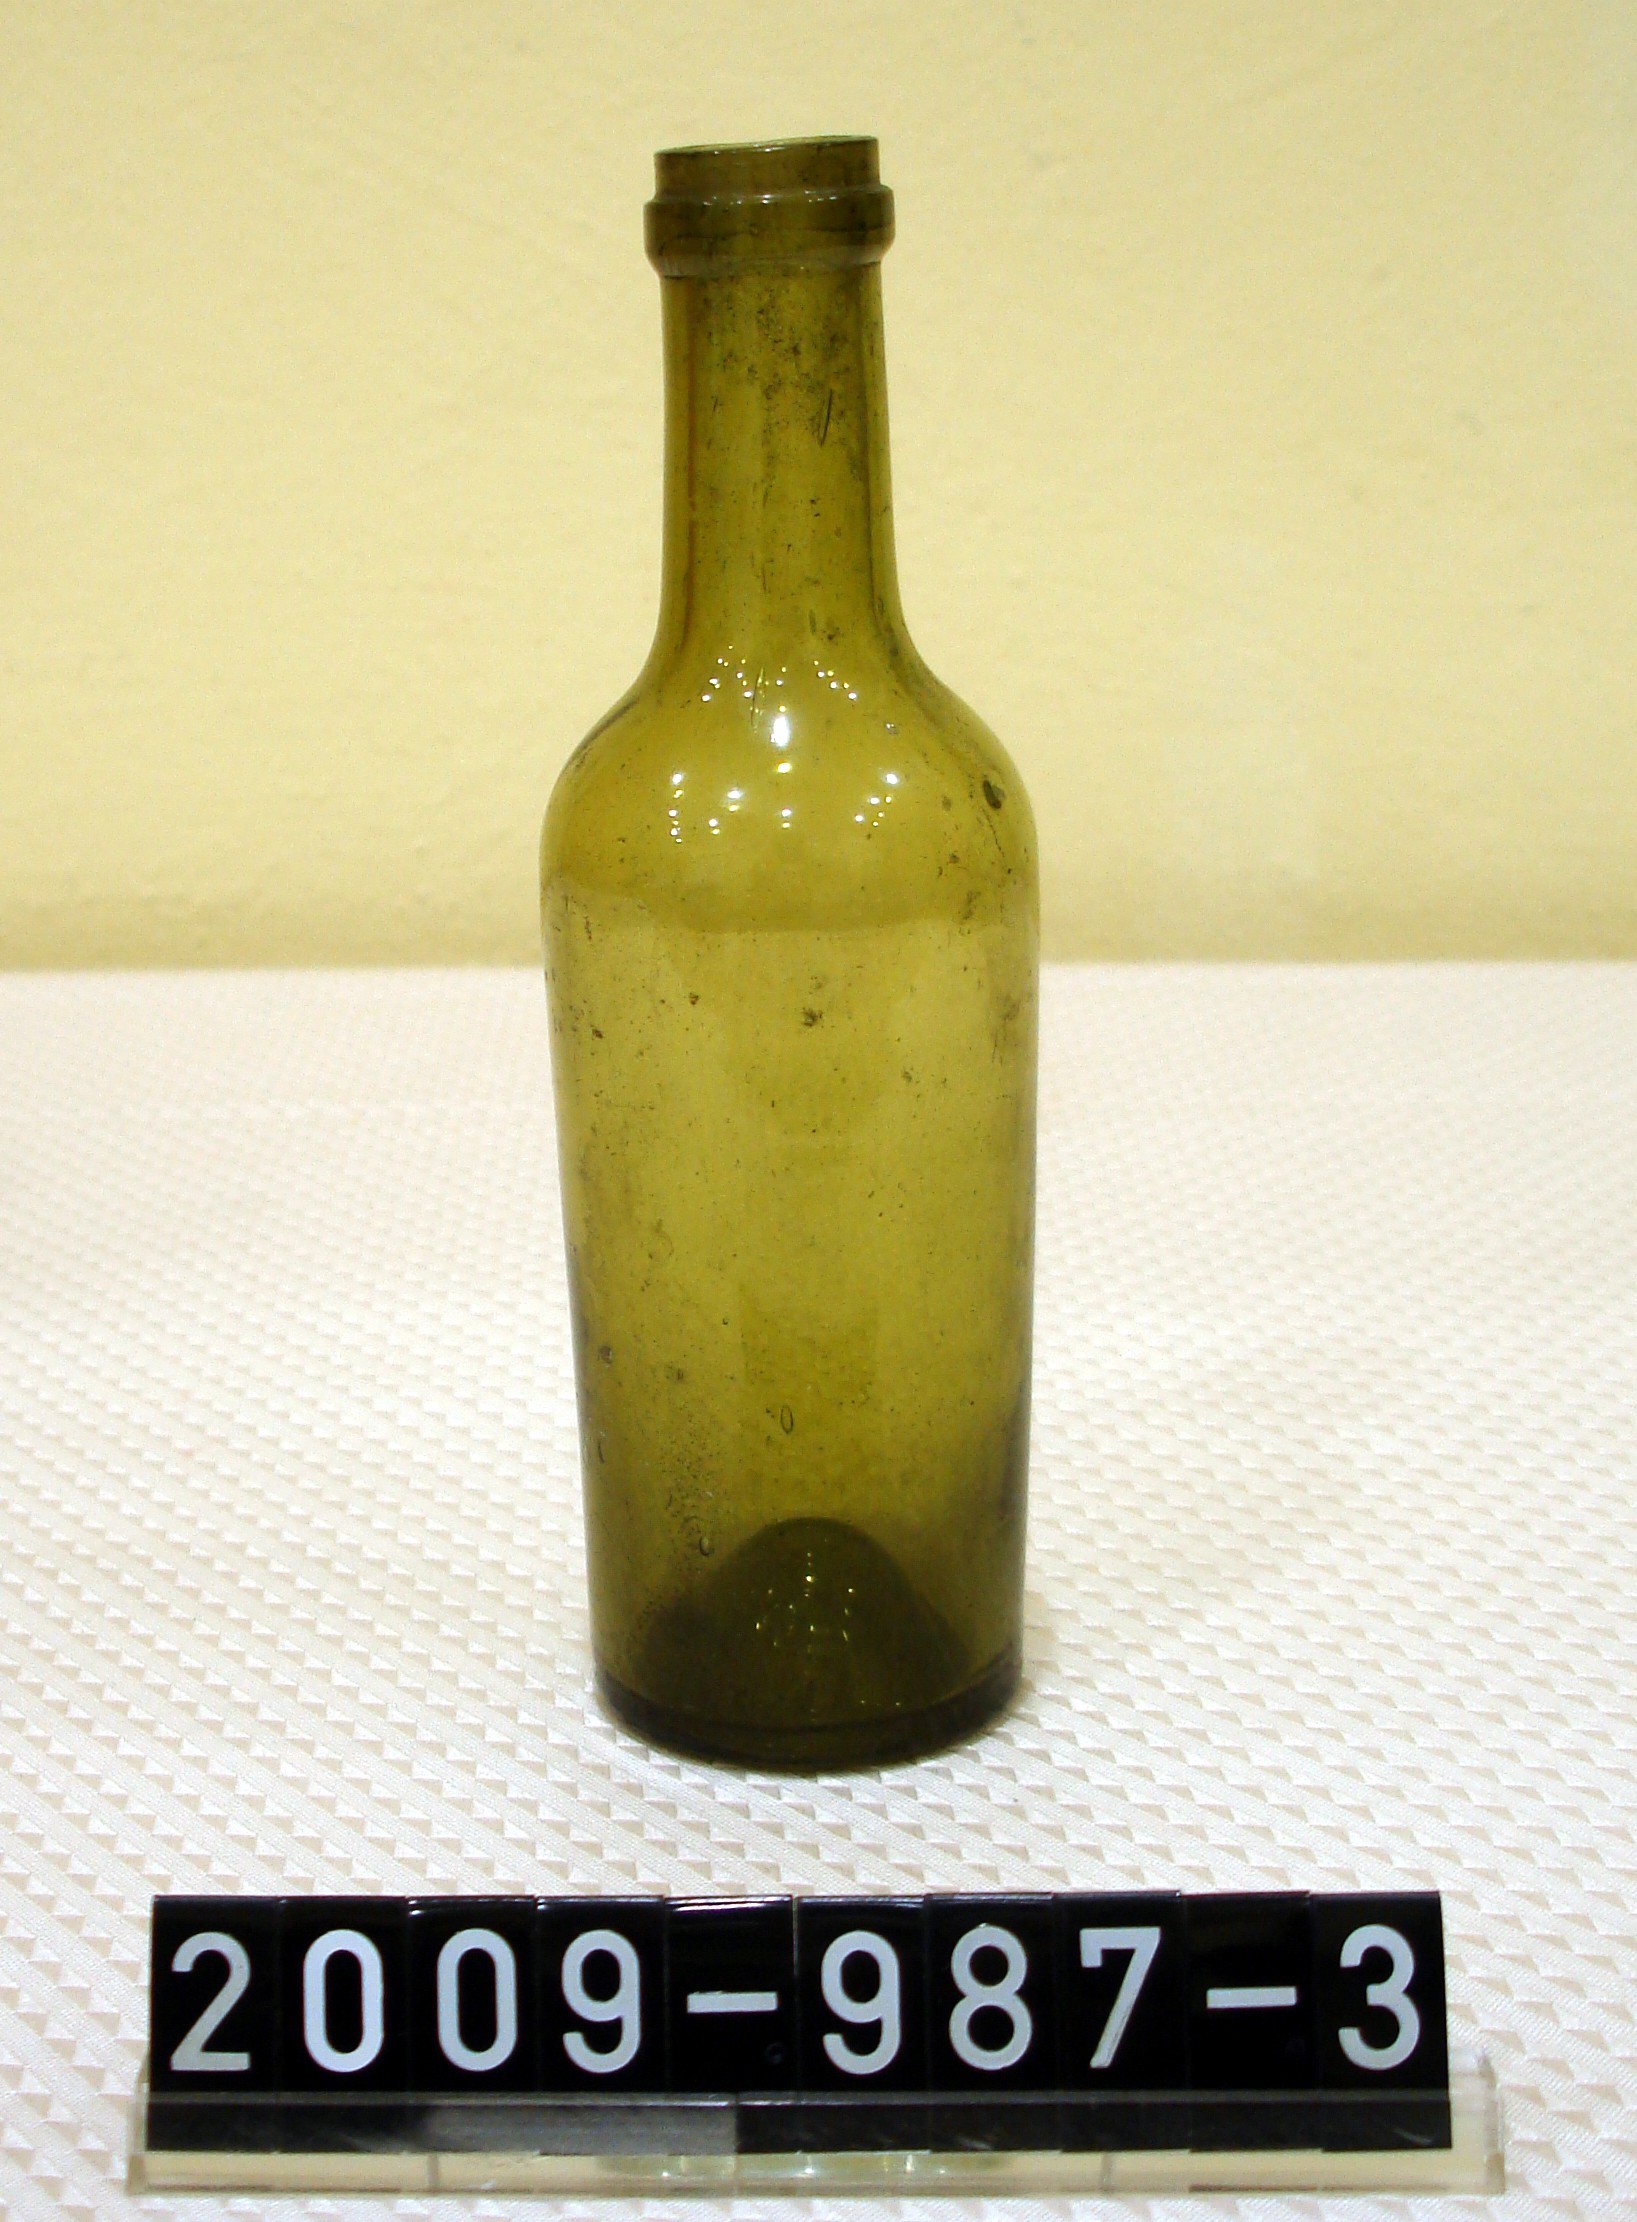 Weinprobierfläschchen; Weinkommissionärsfläschchen; 2. Hälfte 19. Jh. (Stadtmuseum Bad Dürkheim, Museumsgesellschaft Bad Dürkheim e.V. CC BY-NC-SA)